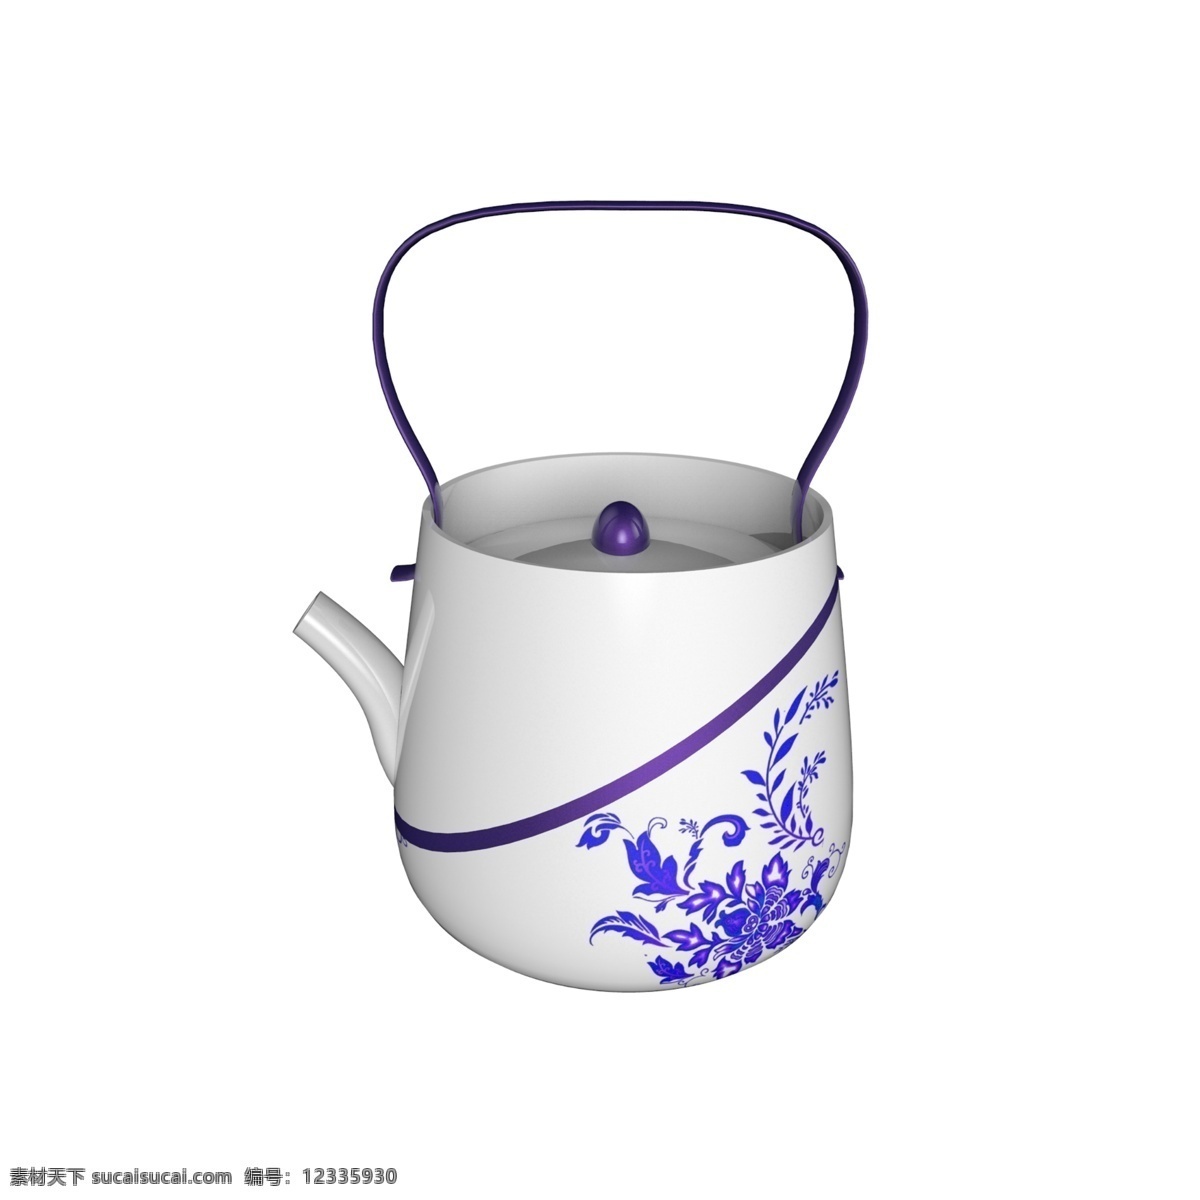 白底 青花 陶瓷 壶 图案 水壶 茶壶 小水壶 喝水 养生 泡茶 茶叶 健康 茶饮 茶壶模型 陶瓷水壶 瓷器 青花图案